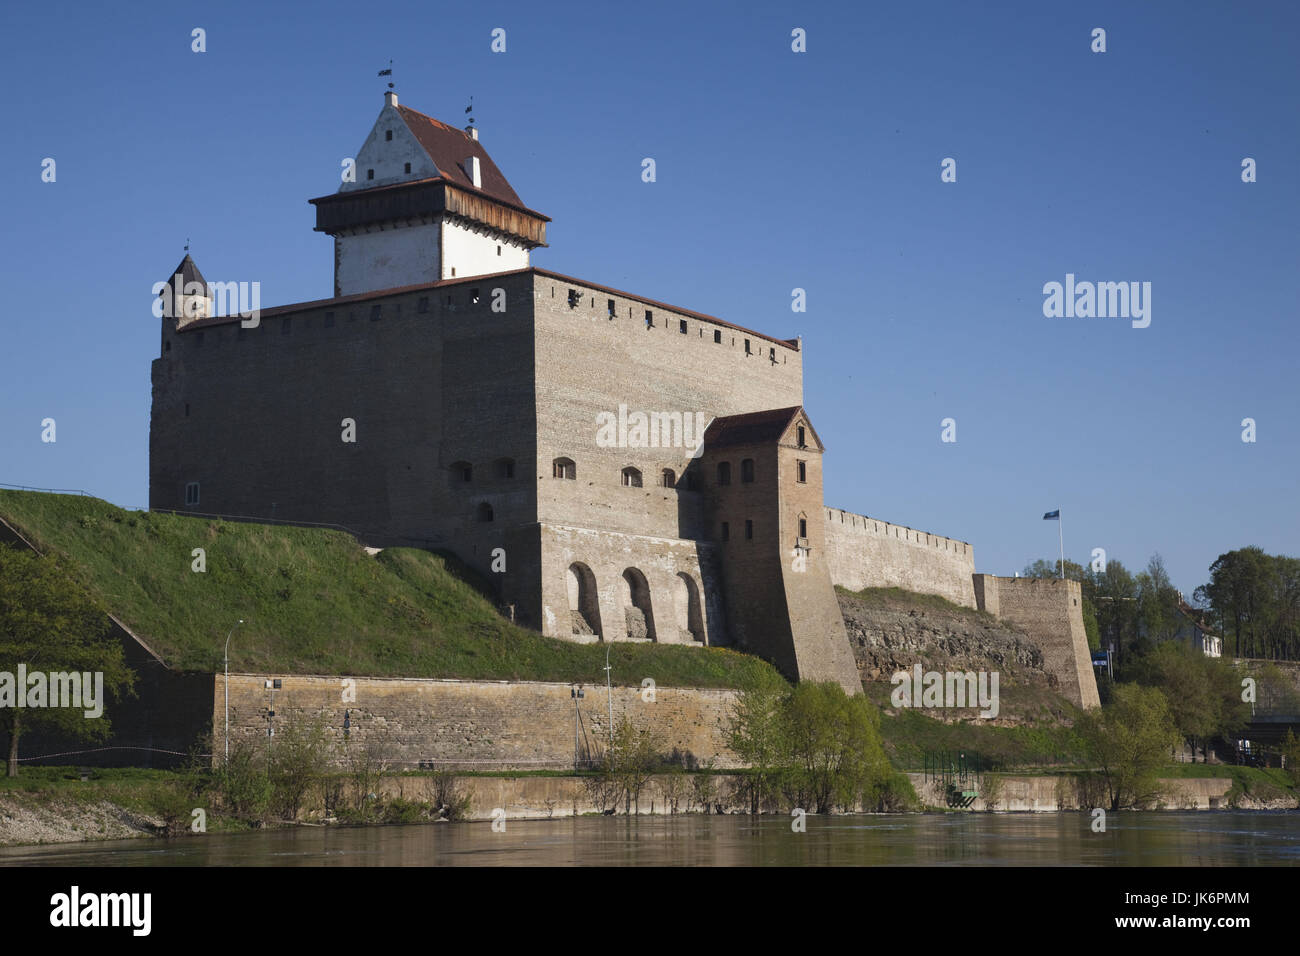 L'Estonie, le nord-est de l'Estonie, Tallinn, du château de Narva, 13e siècle, matin Banque D'Images